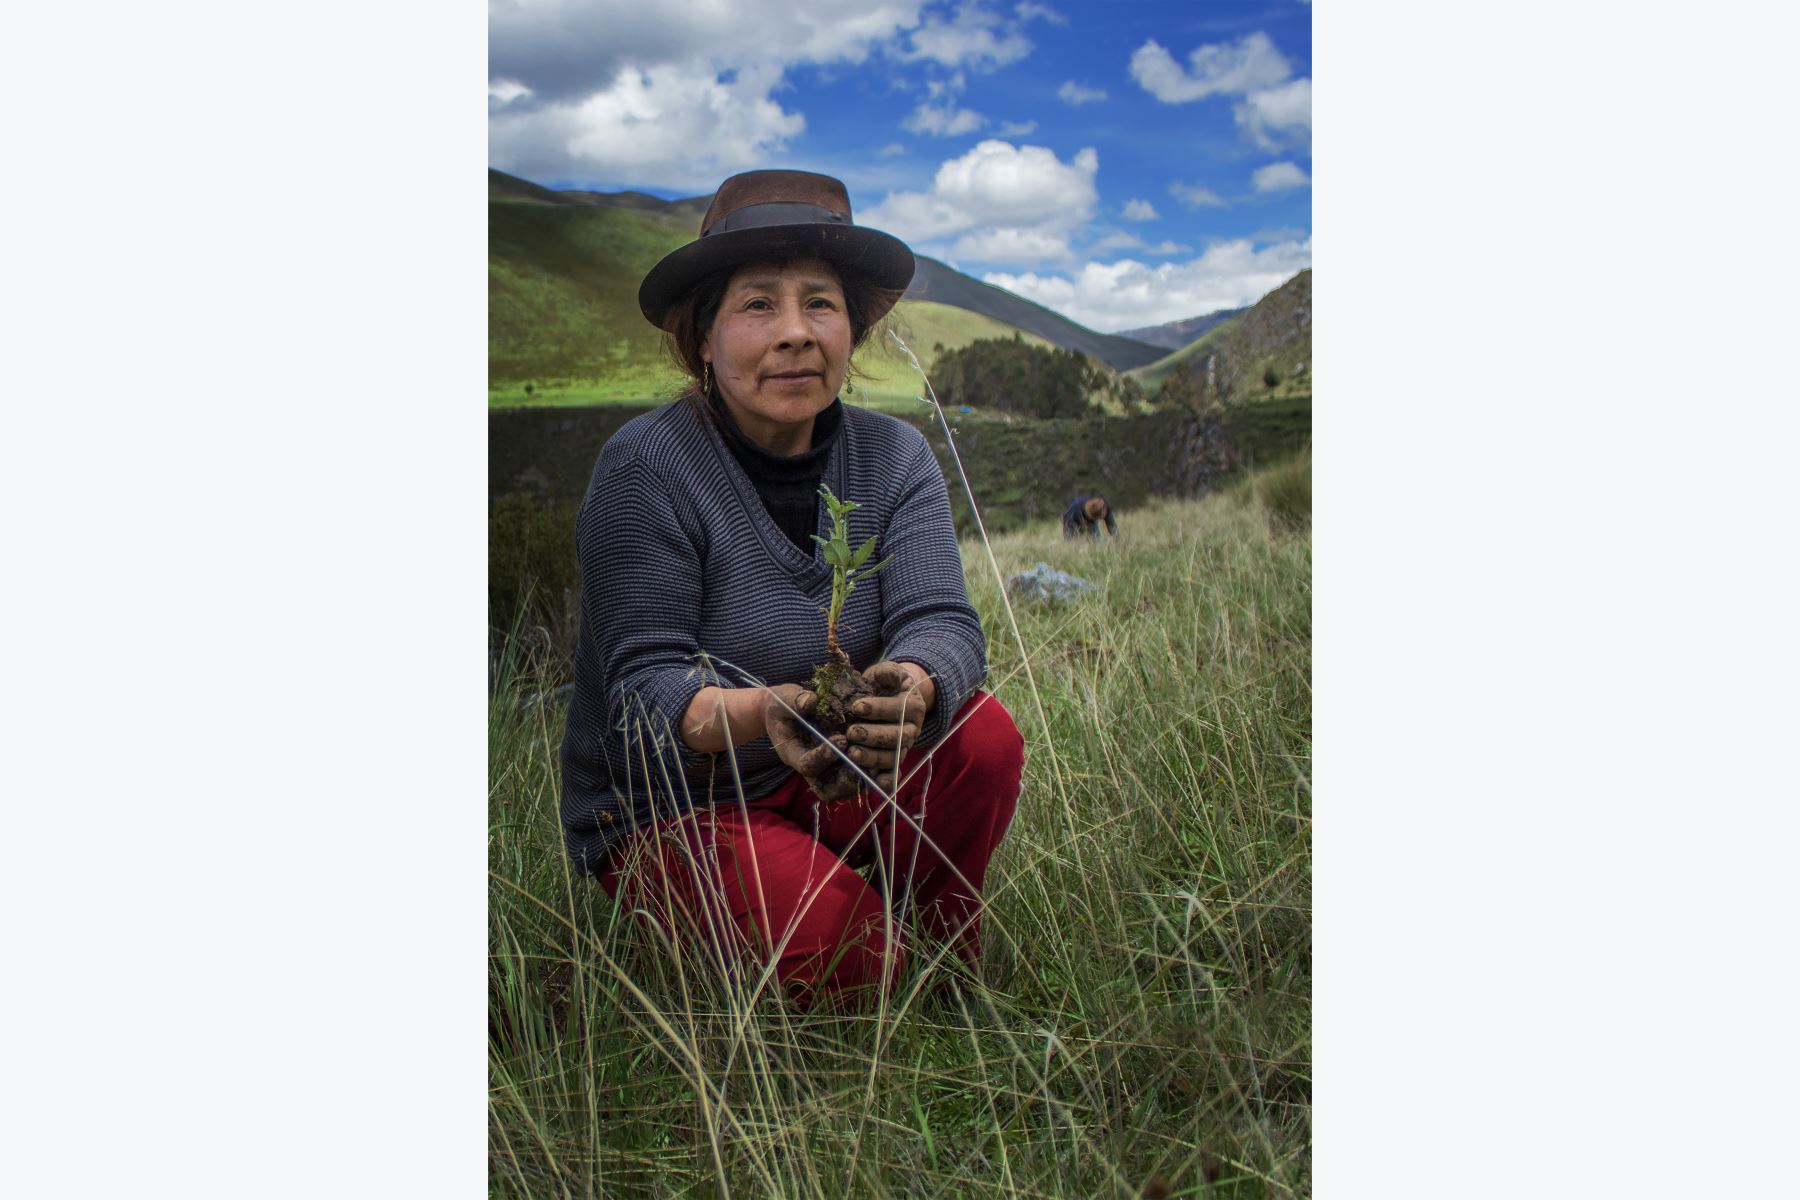 En un tributo visual a la identidad andina peruana, la ciudad de Concepción (Junín) se prepara para recibir la exposición fotográfica “Territorialidad Cultural y Espacial en los Andes", presentada por la Asociación de Fotógrafos HatunMayu, que agrupa a los fotógrafos peruanos, quienes prometen un viaje inmersivo para todos los espectadores. 
Foto: Cortesía HatunMayu